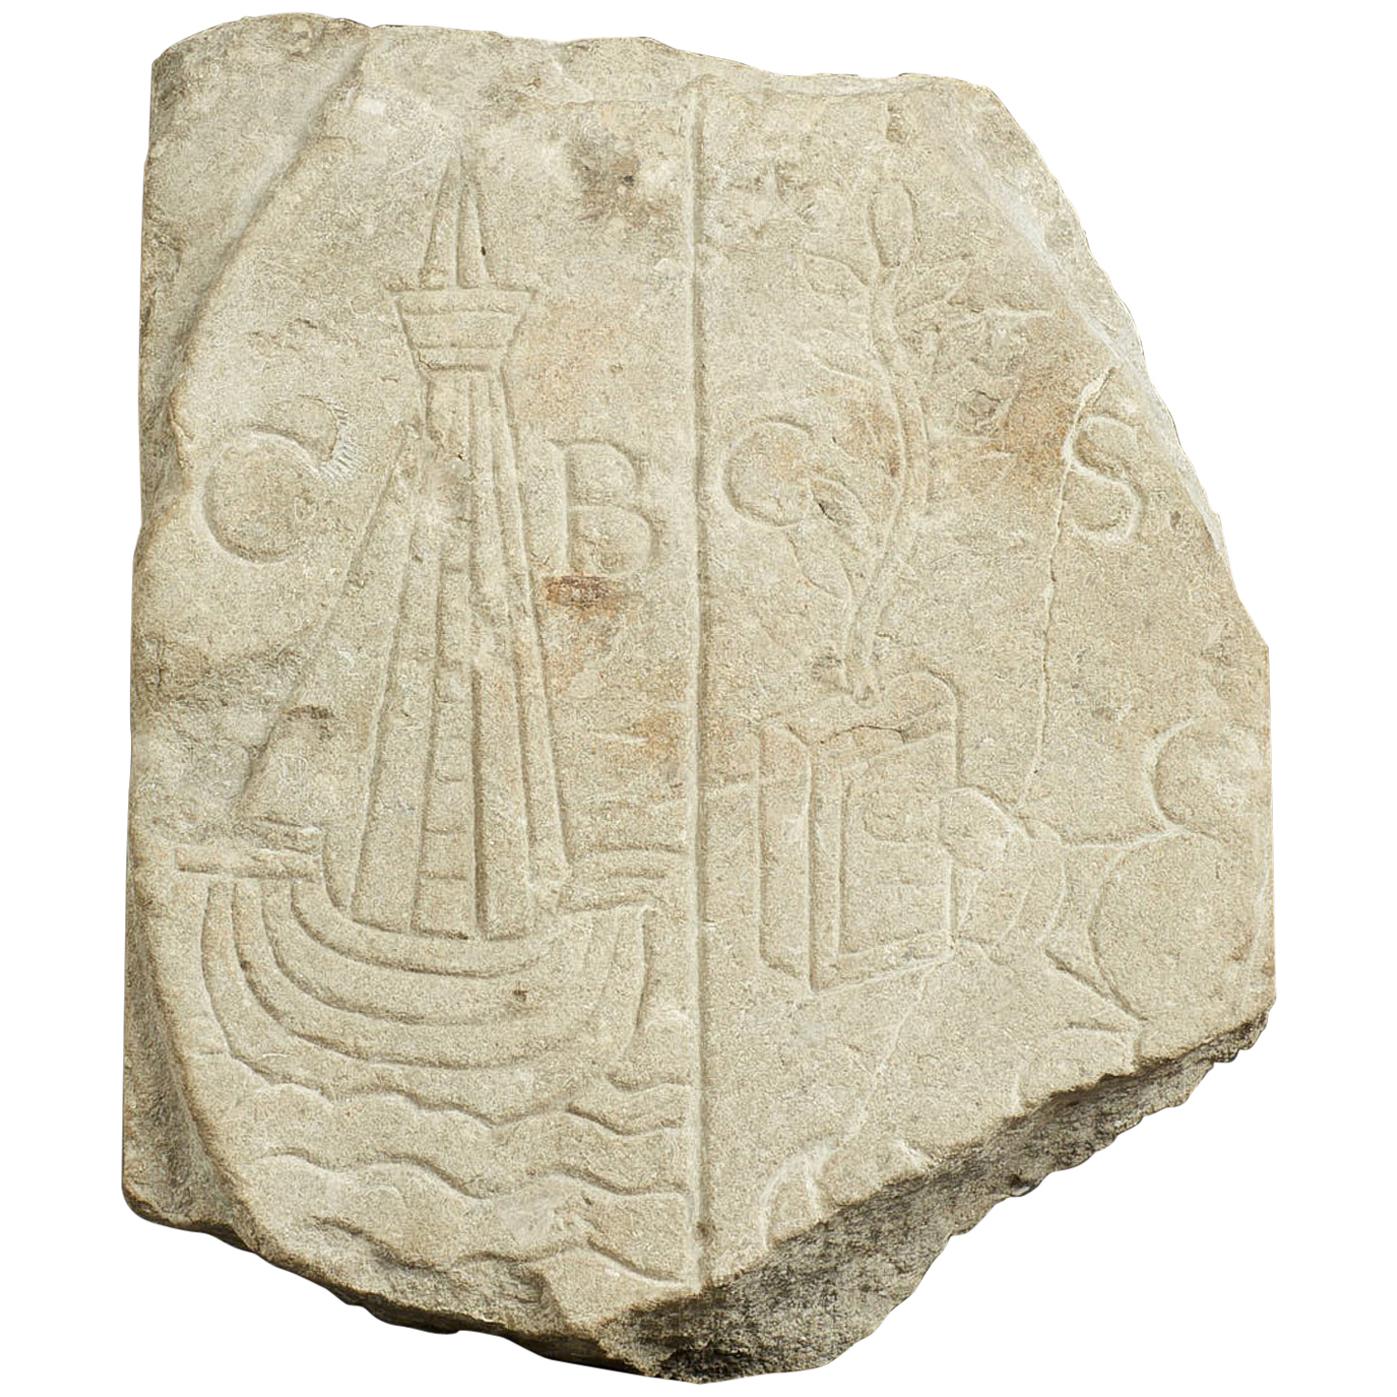 Medieval Limestone Commemorative Stone Marker, English, circa 1450-1550